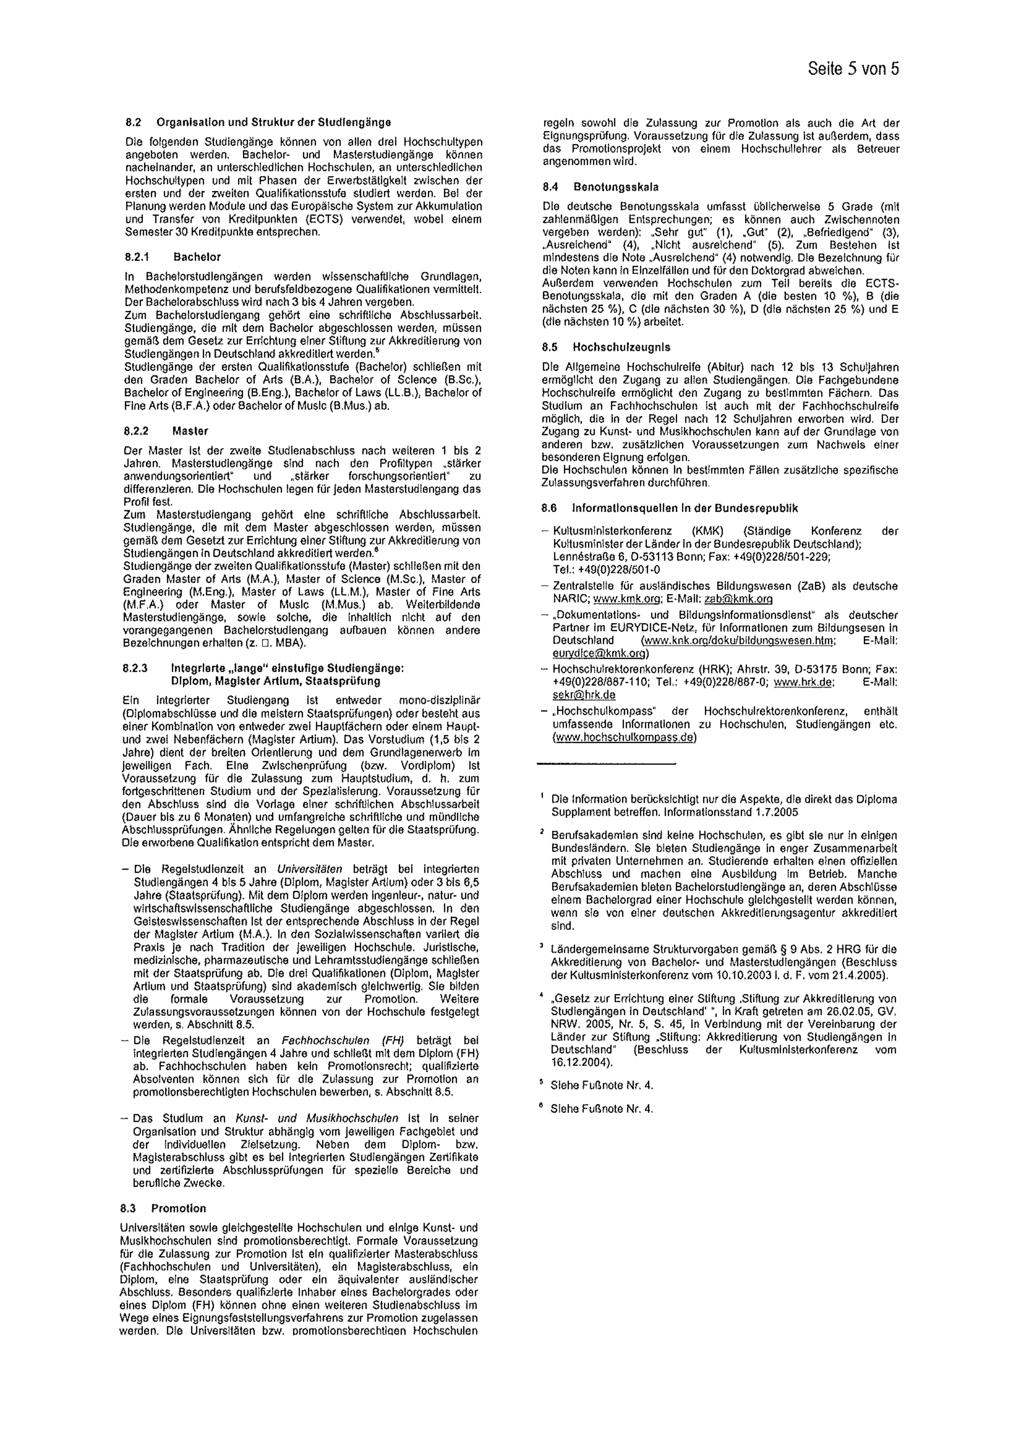 Nr. 1/2010 Mitteilungsblatt des Ministeriums für